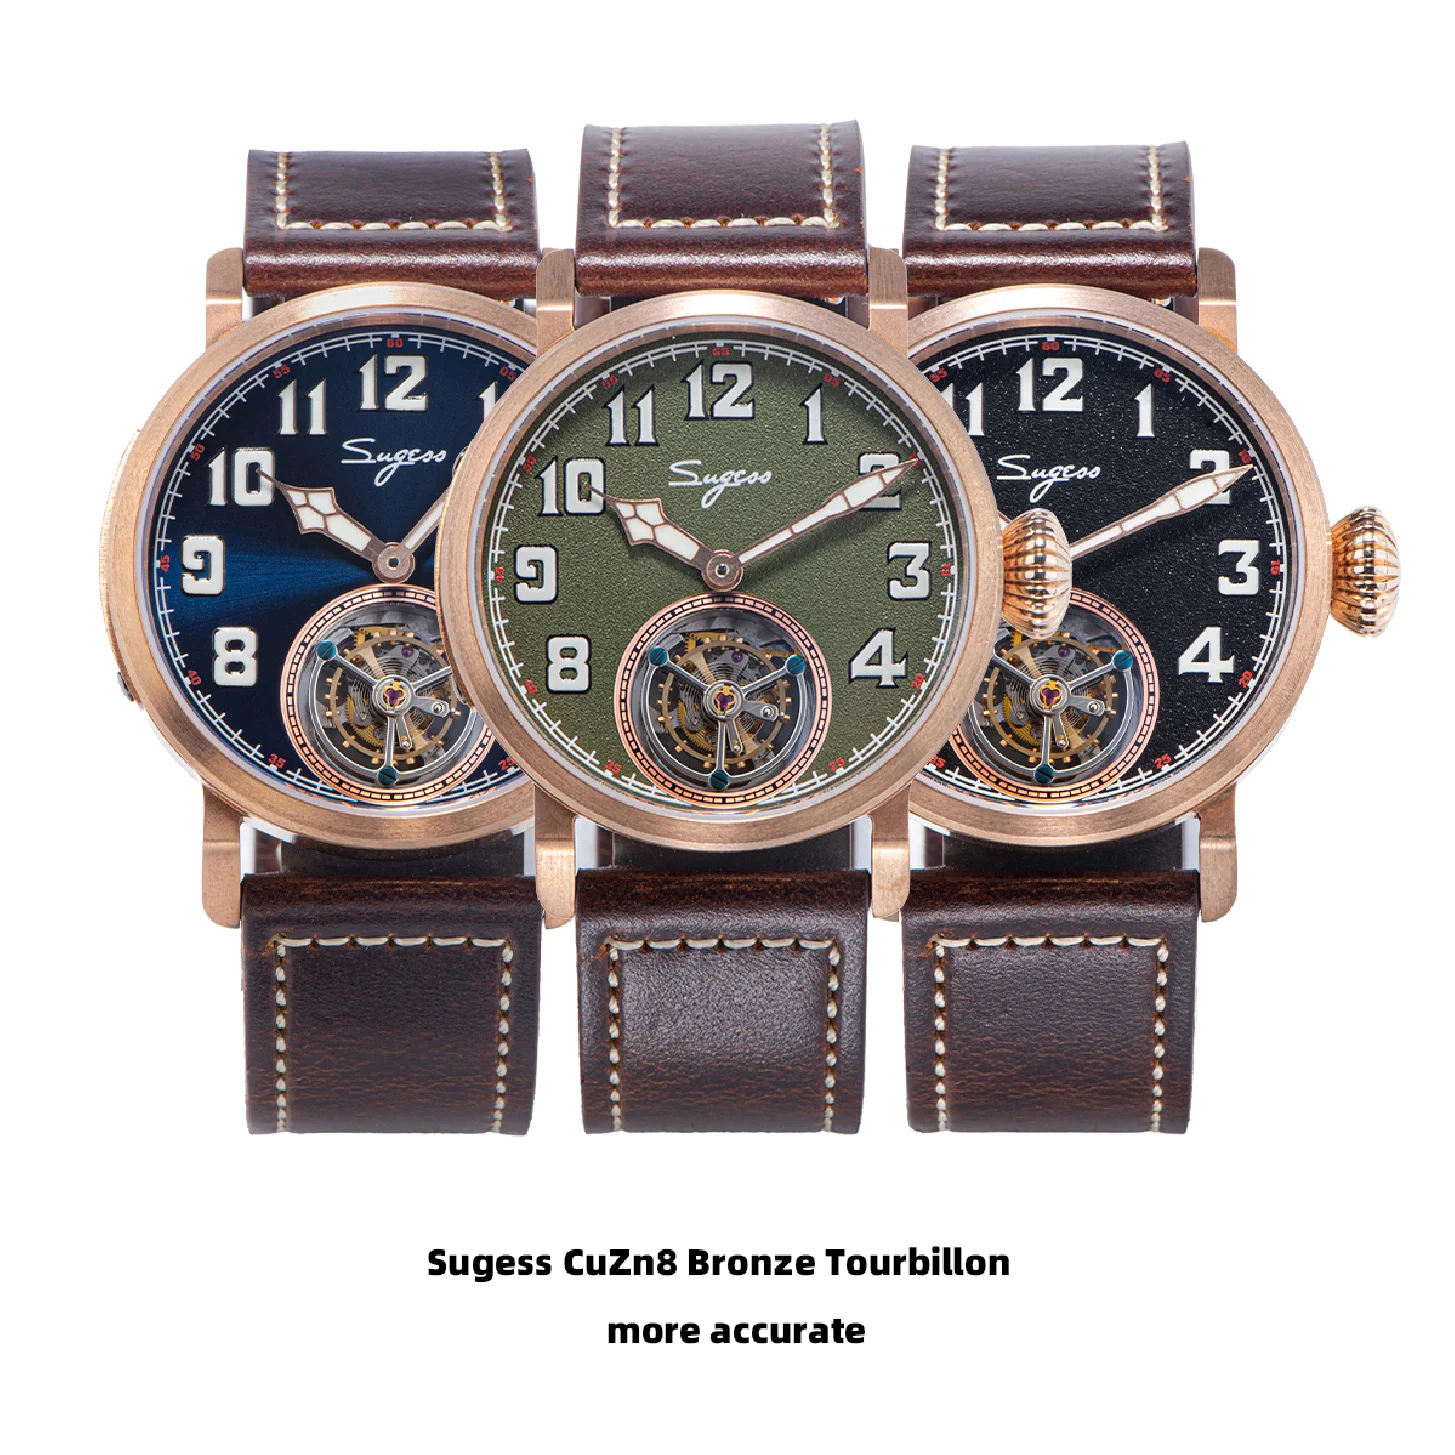 

Sugess Bronze Tourbillon Watch Seagull ST8230 Mechanical Hand Movement Mechanical Skeleton Wristwatches CuSn8 Case BGW9 Luminous